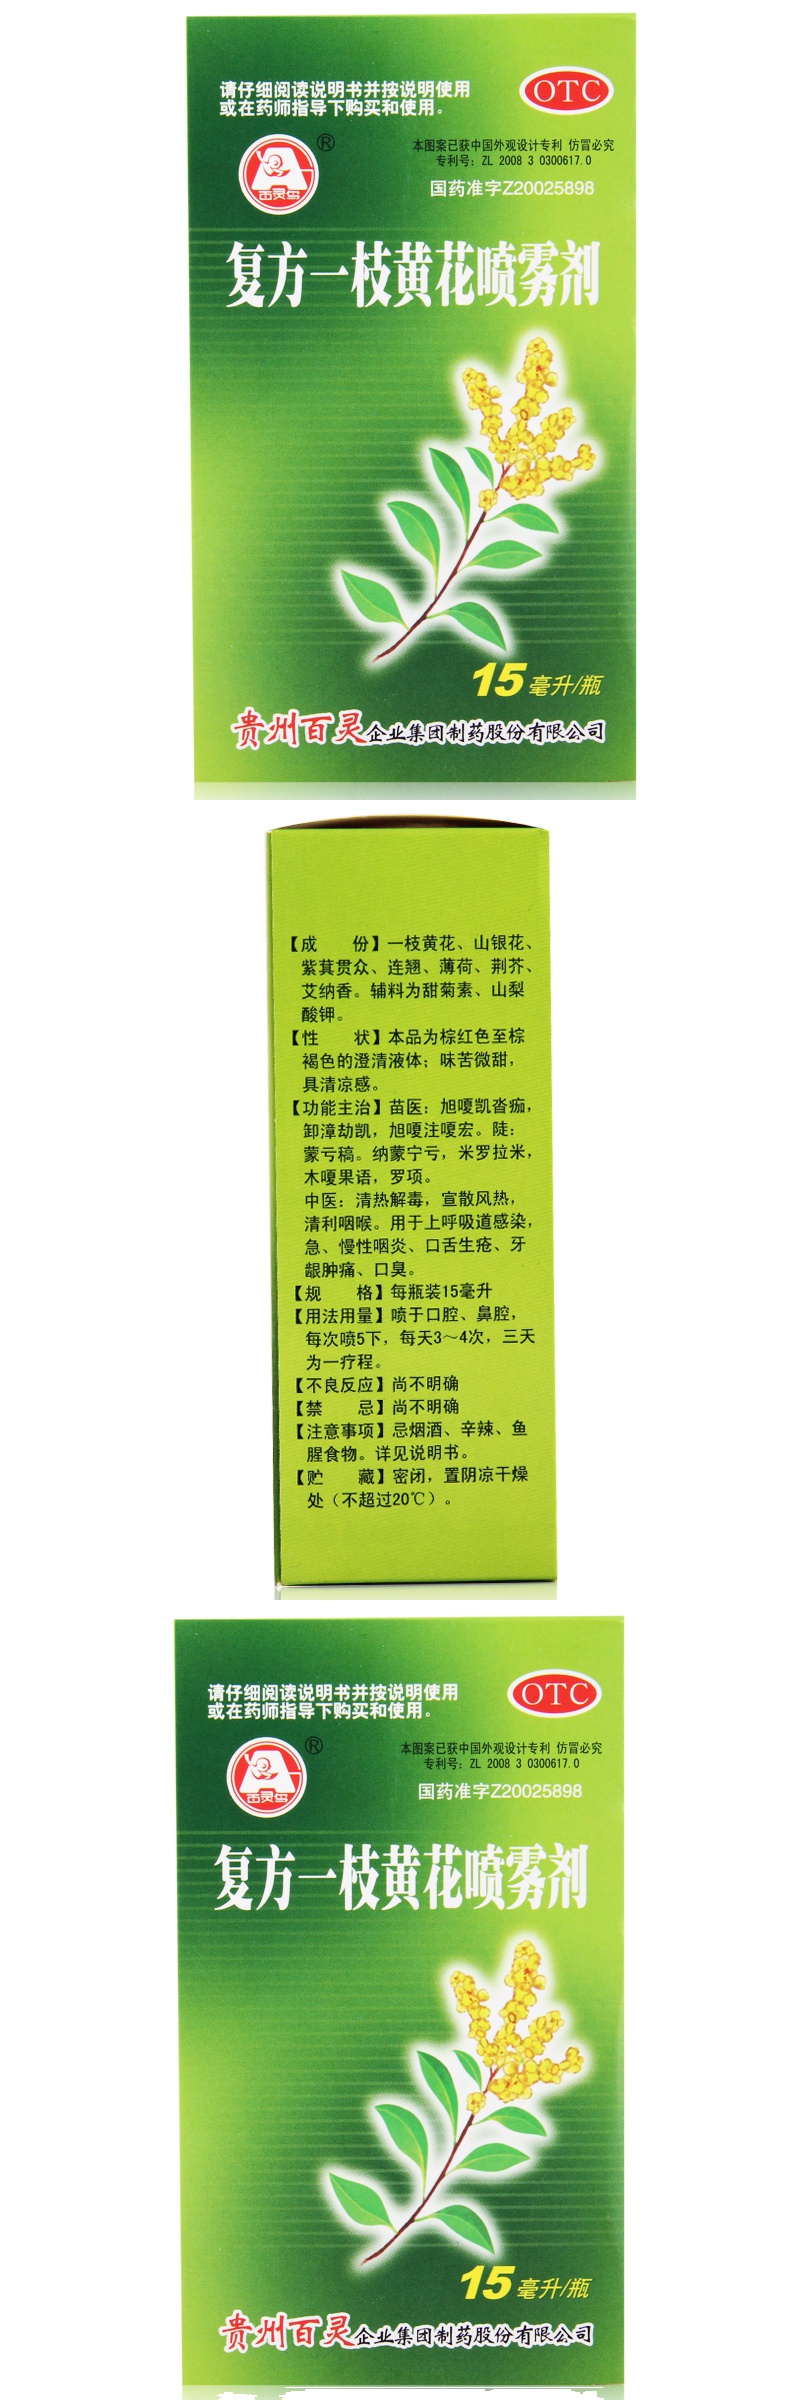 5盒]贵州百灵复方一枝黄花喷雾剂15ml 清热解毒,宣散风热,清利咽喉.